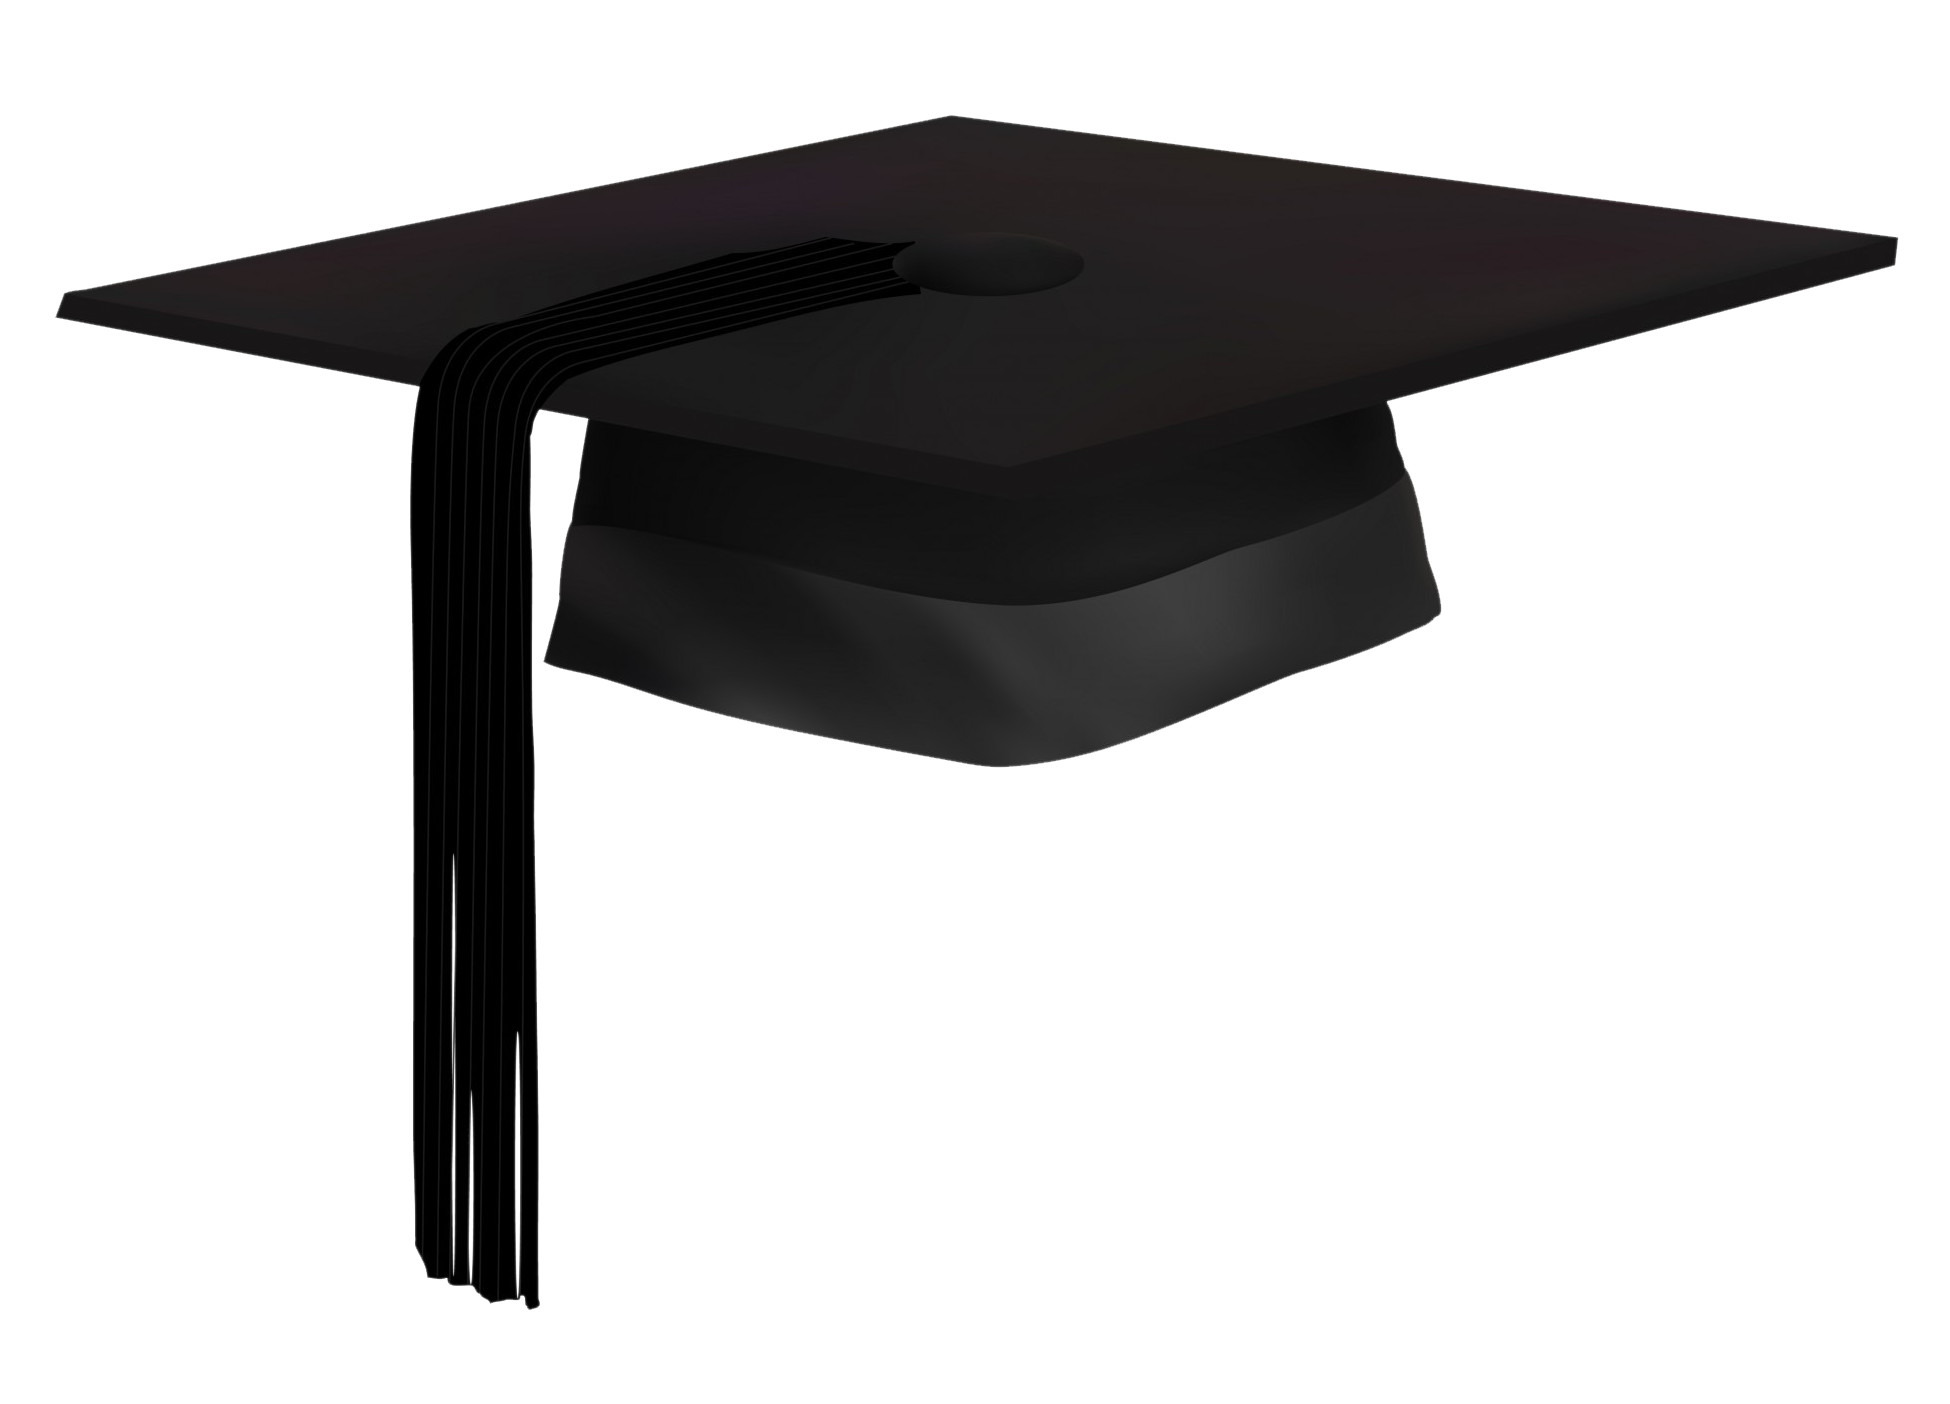 Graduation cap variant Free I